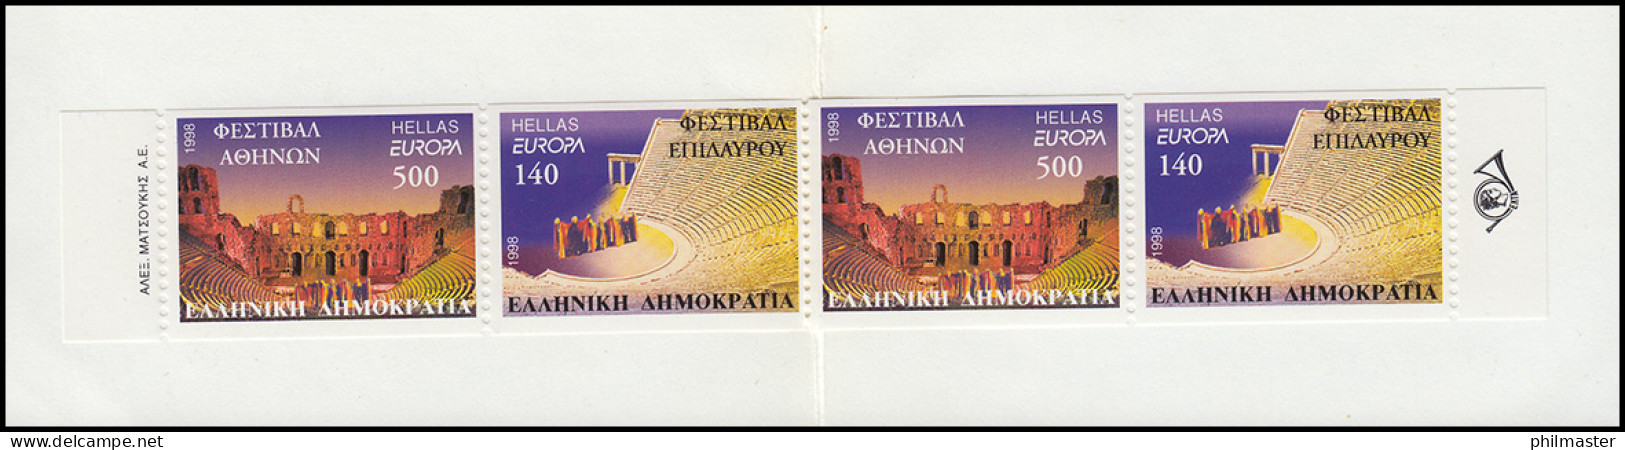 Griechenland Markenheftchen 21 Europa 1998, Postfrisch ** / MNH - Markenheftchen